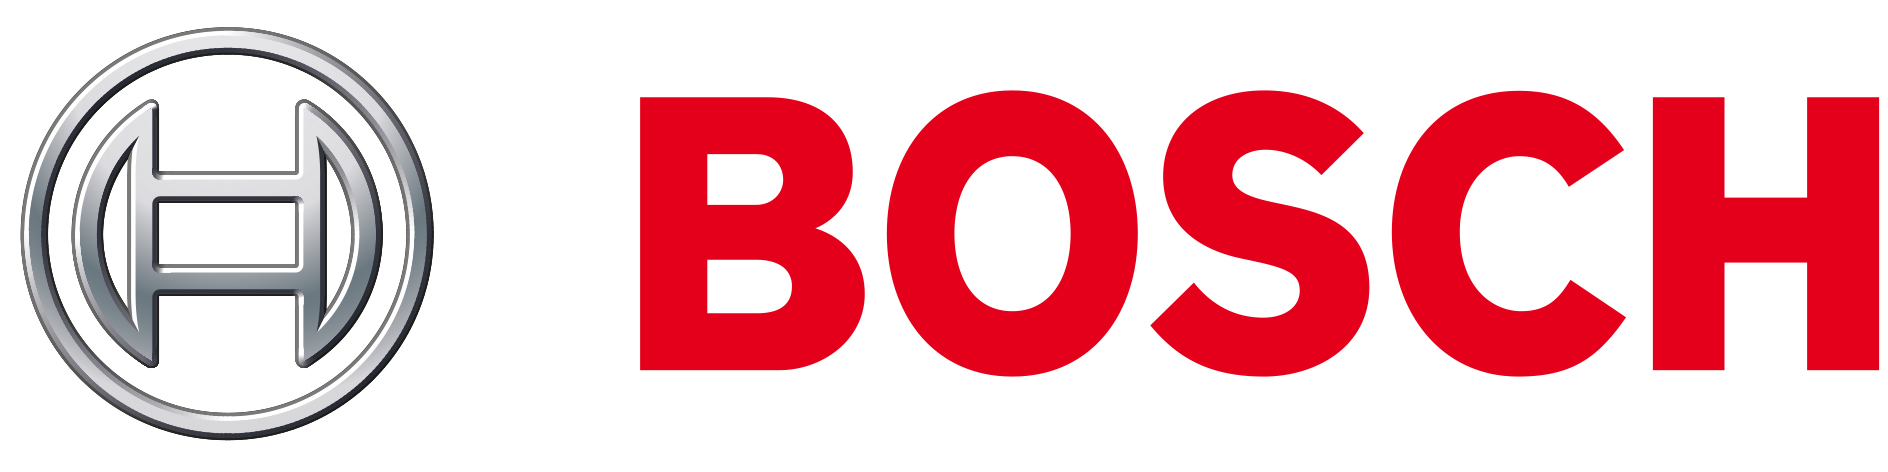 Bosch - Handmixer